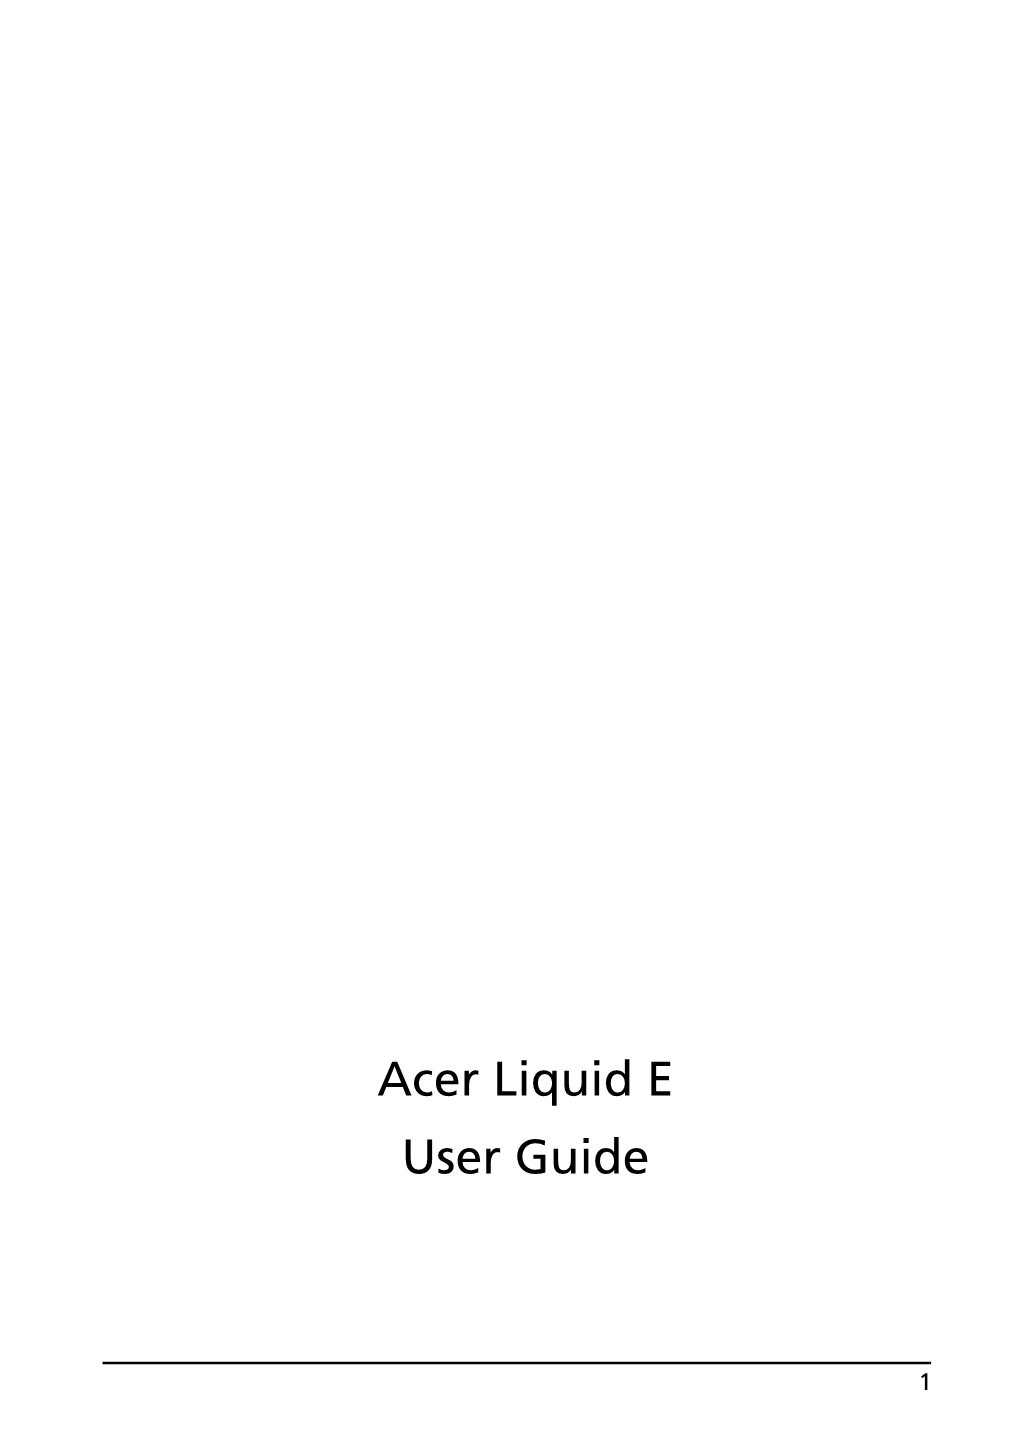 Acer Liquid E User Guide